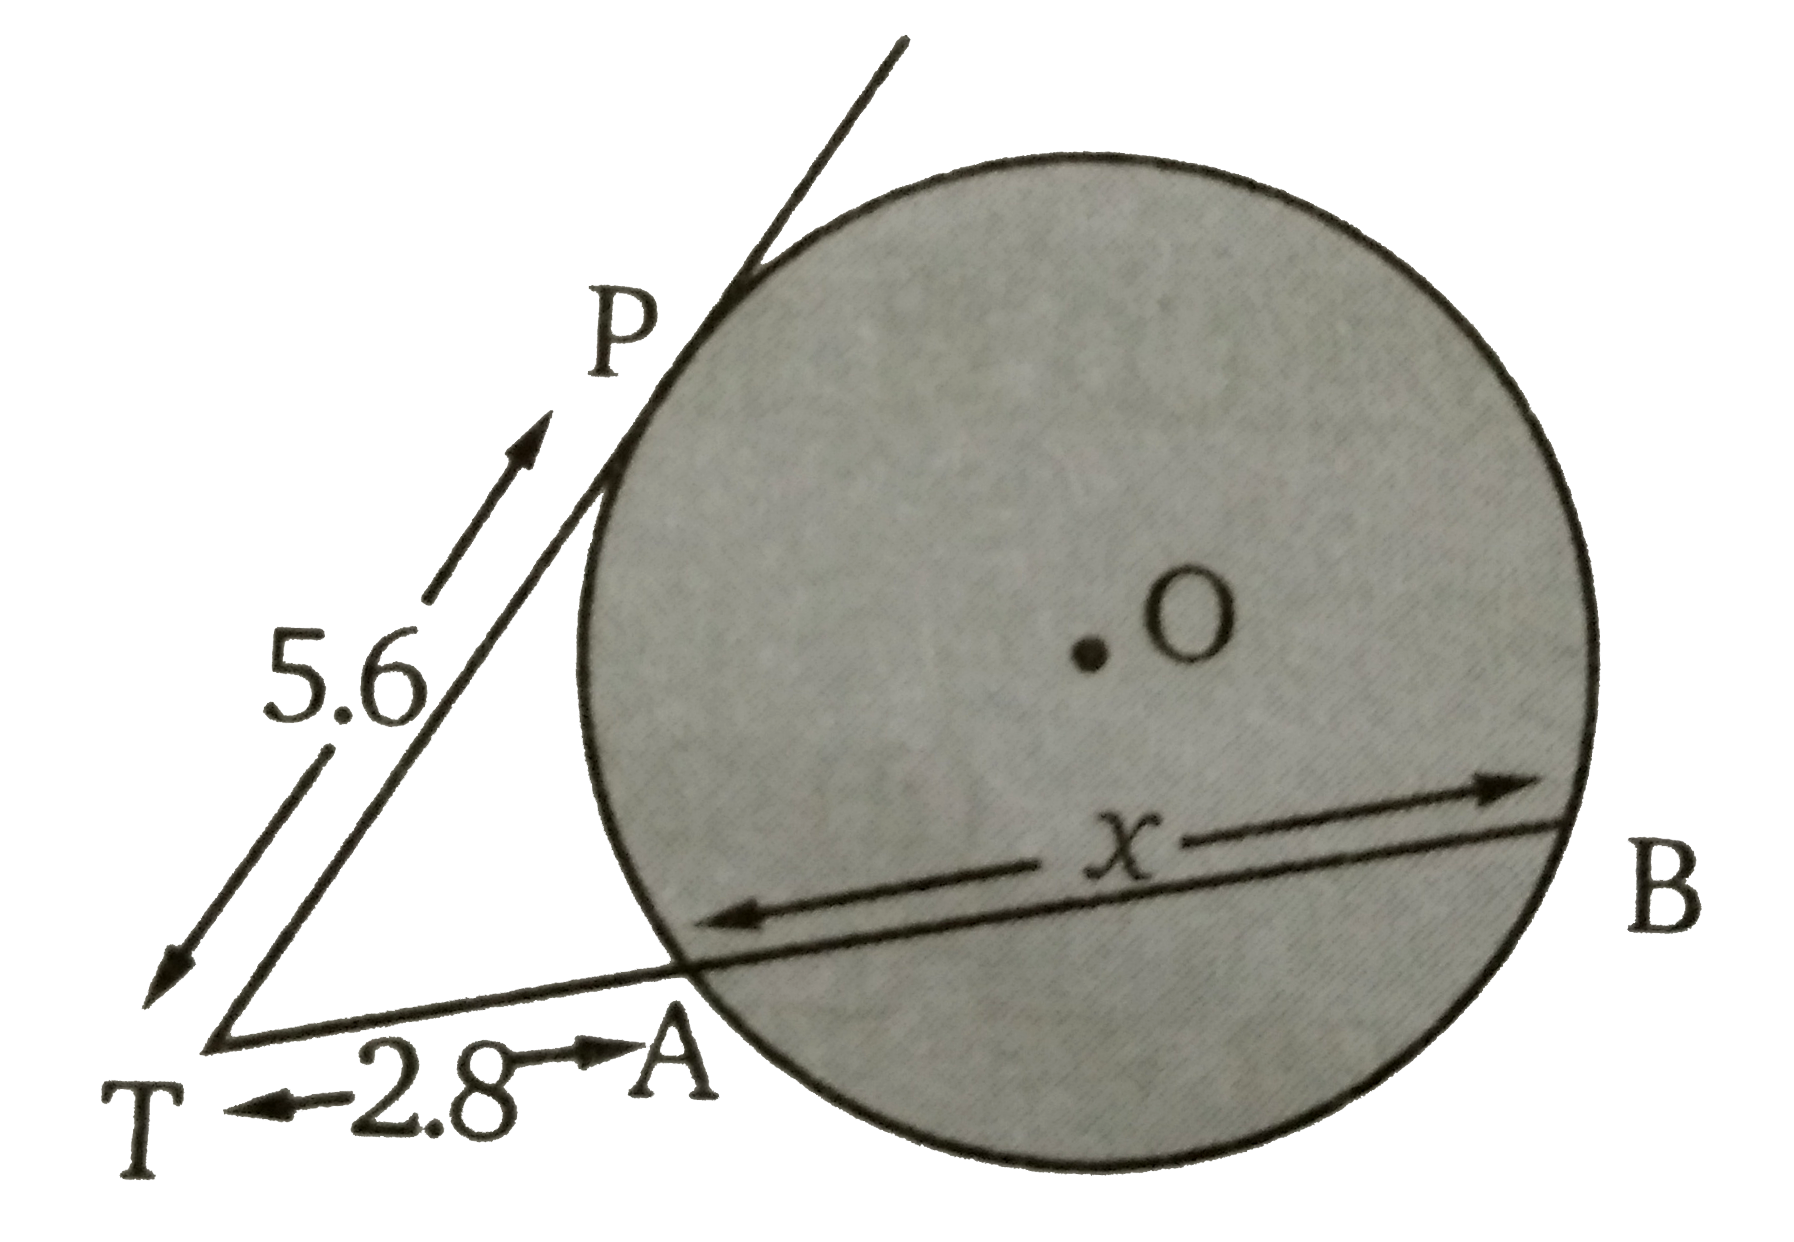 दिये गये चित्र में TAB, O  केंद्र वाले वृत्त की छेदक रेखा है तथा वृत्त के बिन्दु P  पर TP  एक स्पर्शी है। यदि TP = 5.6  सेमी तथा TA = 2.8  सेमी हो तब जीवा AB  की माप ज्ञात कीजिए ।